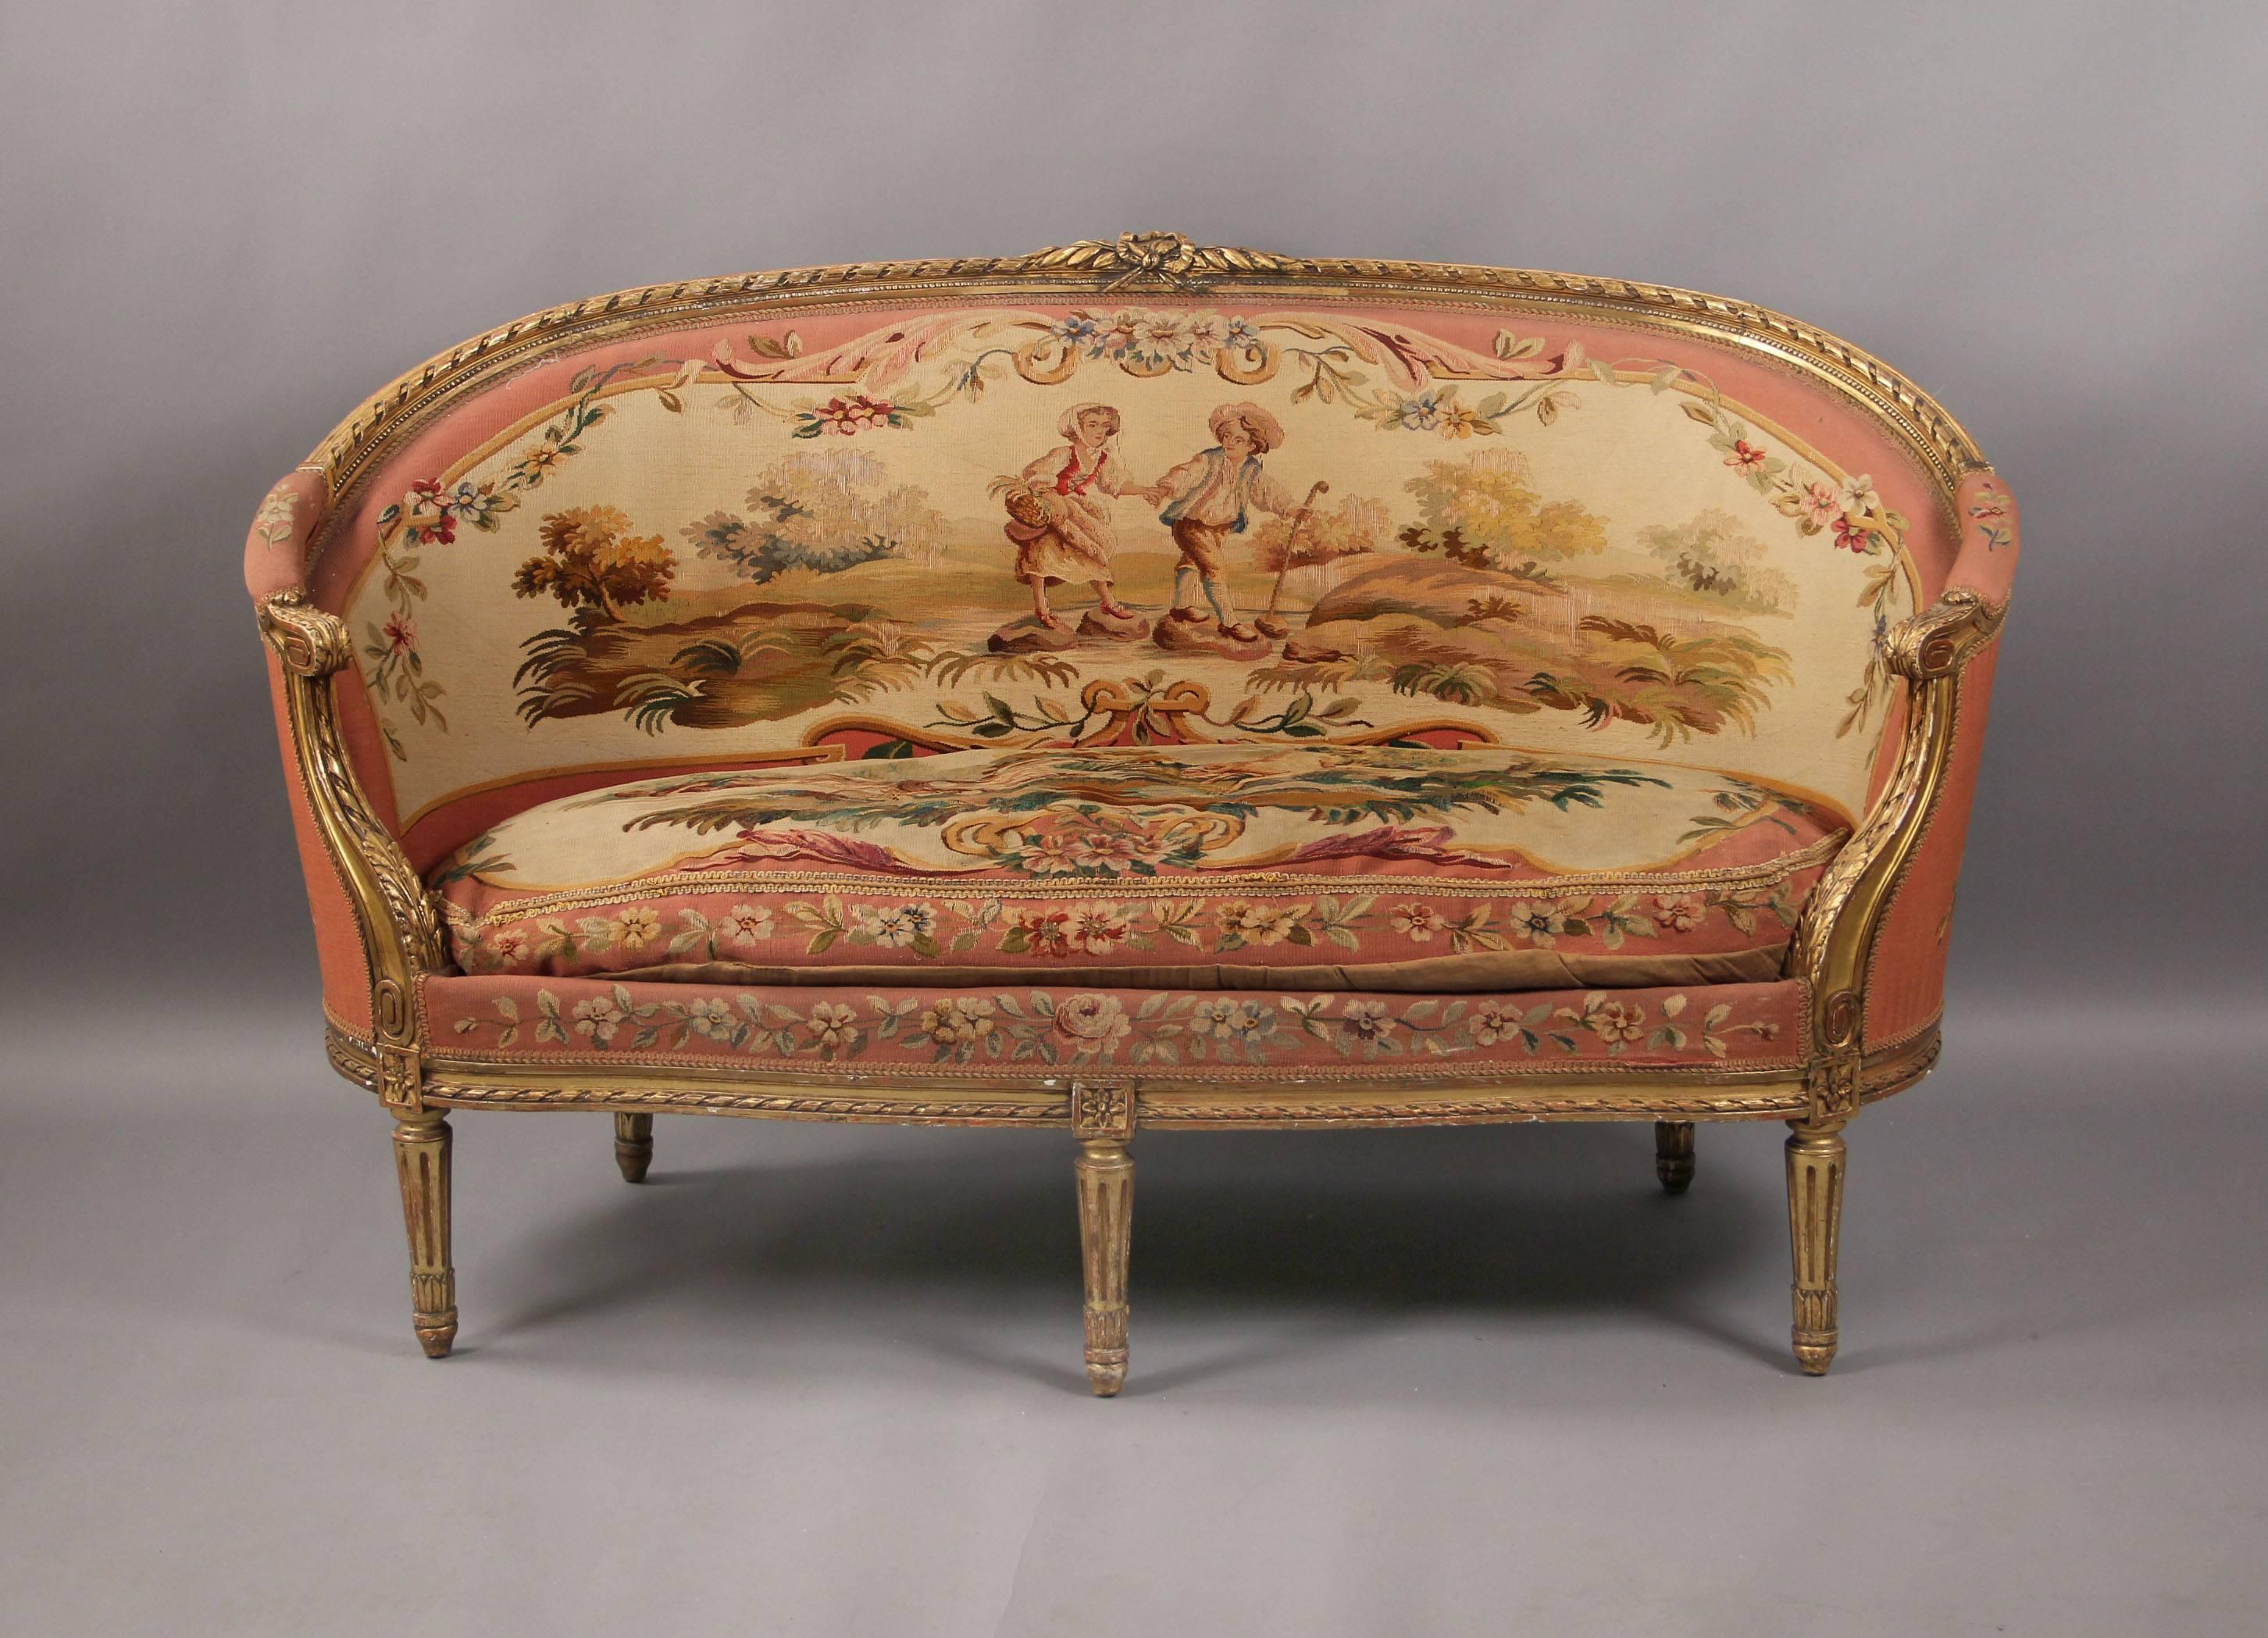 Ein schönes fünfteiliges geschnitztes Aubusson-Wandteppich-Salon-Set im Louis-XVI-Stil des späten 19.

Bestehend aus einer Couch und vier Sesseln.

Jede mit einer ovalen gepolsterten Rückenlehne, die sich in gepolsterte Armlehnen und einen